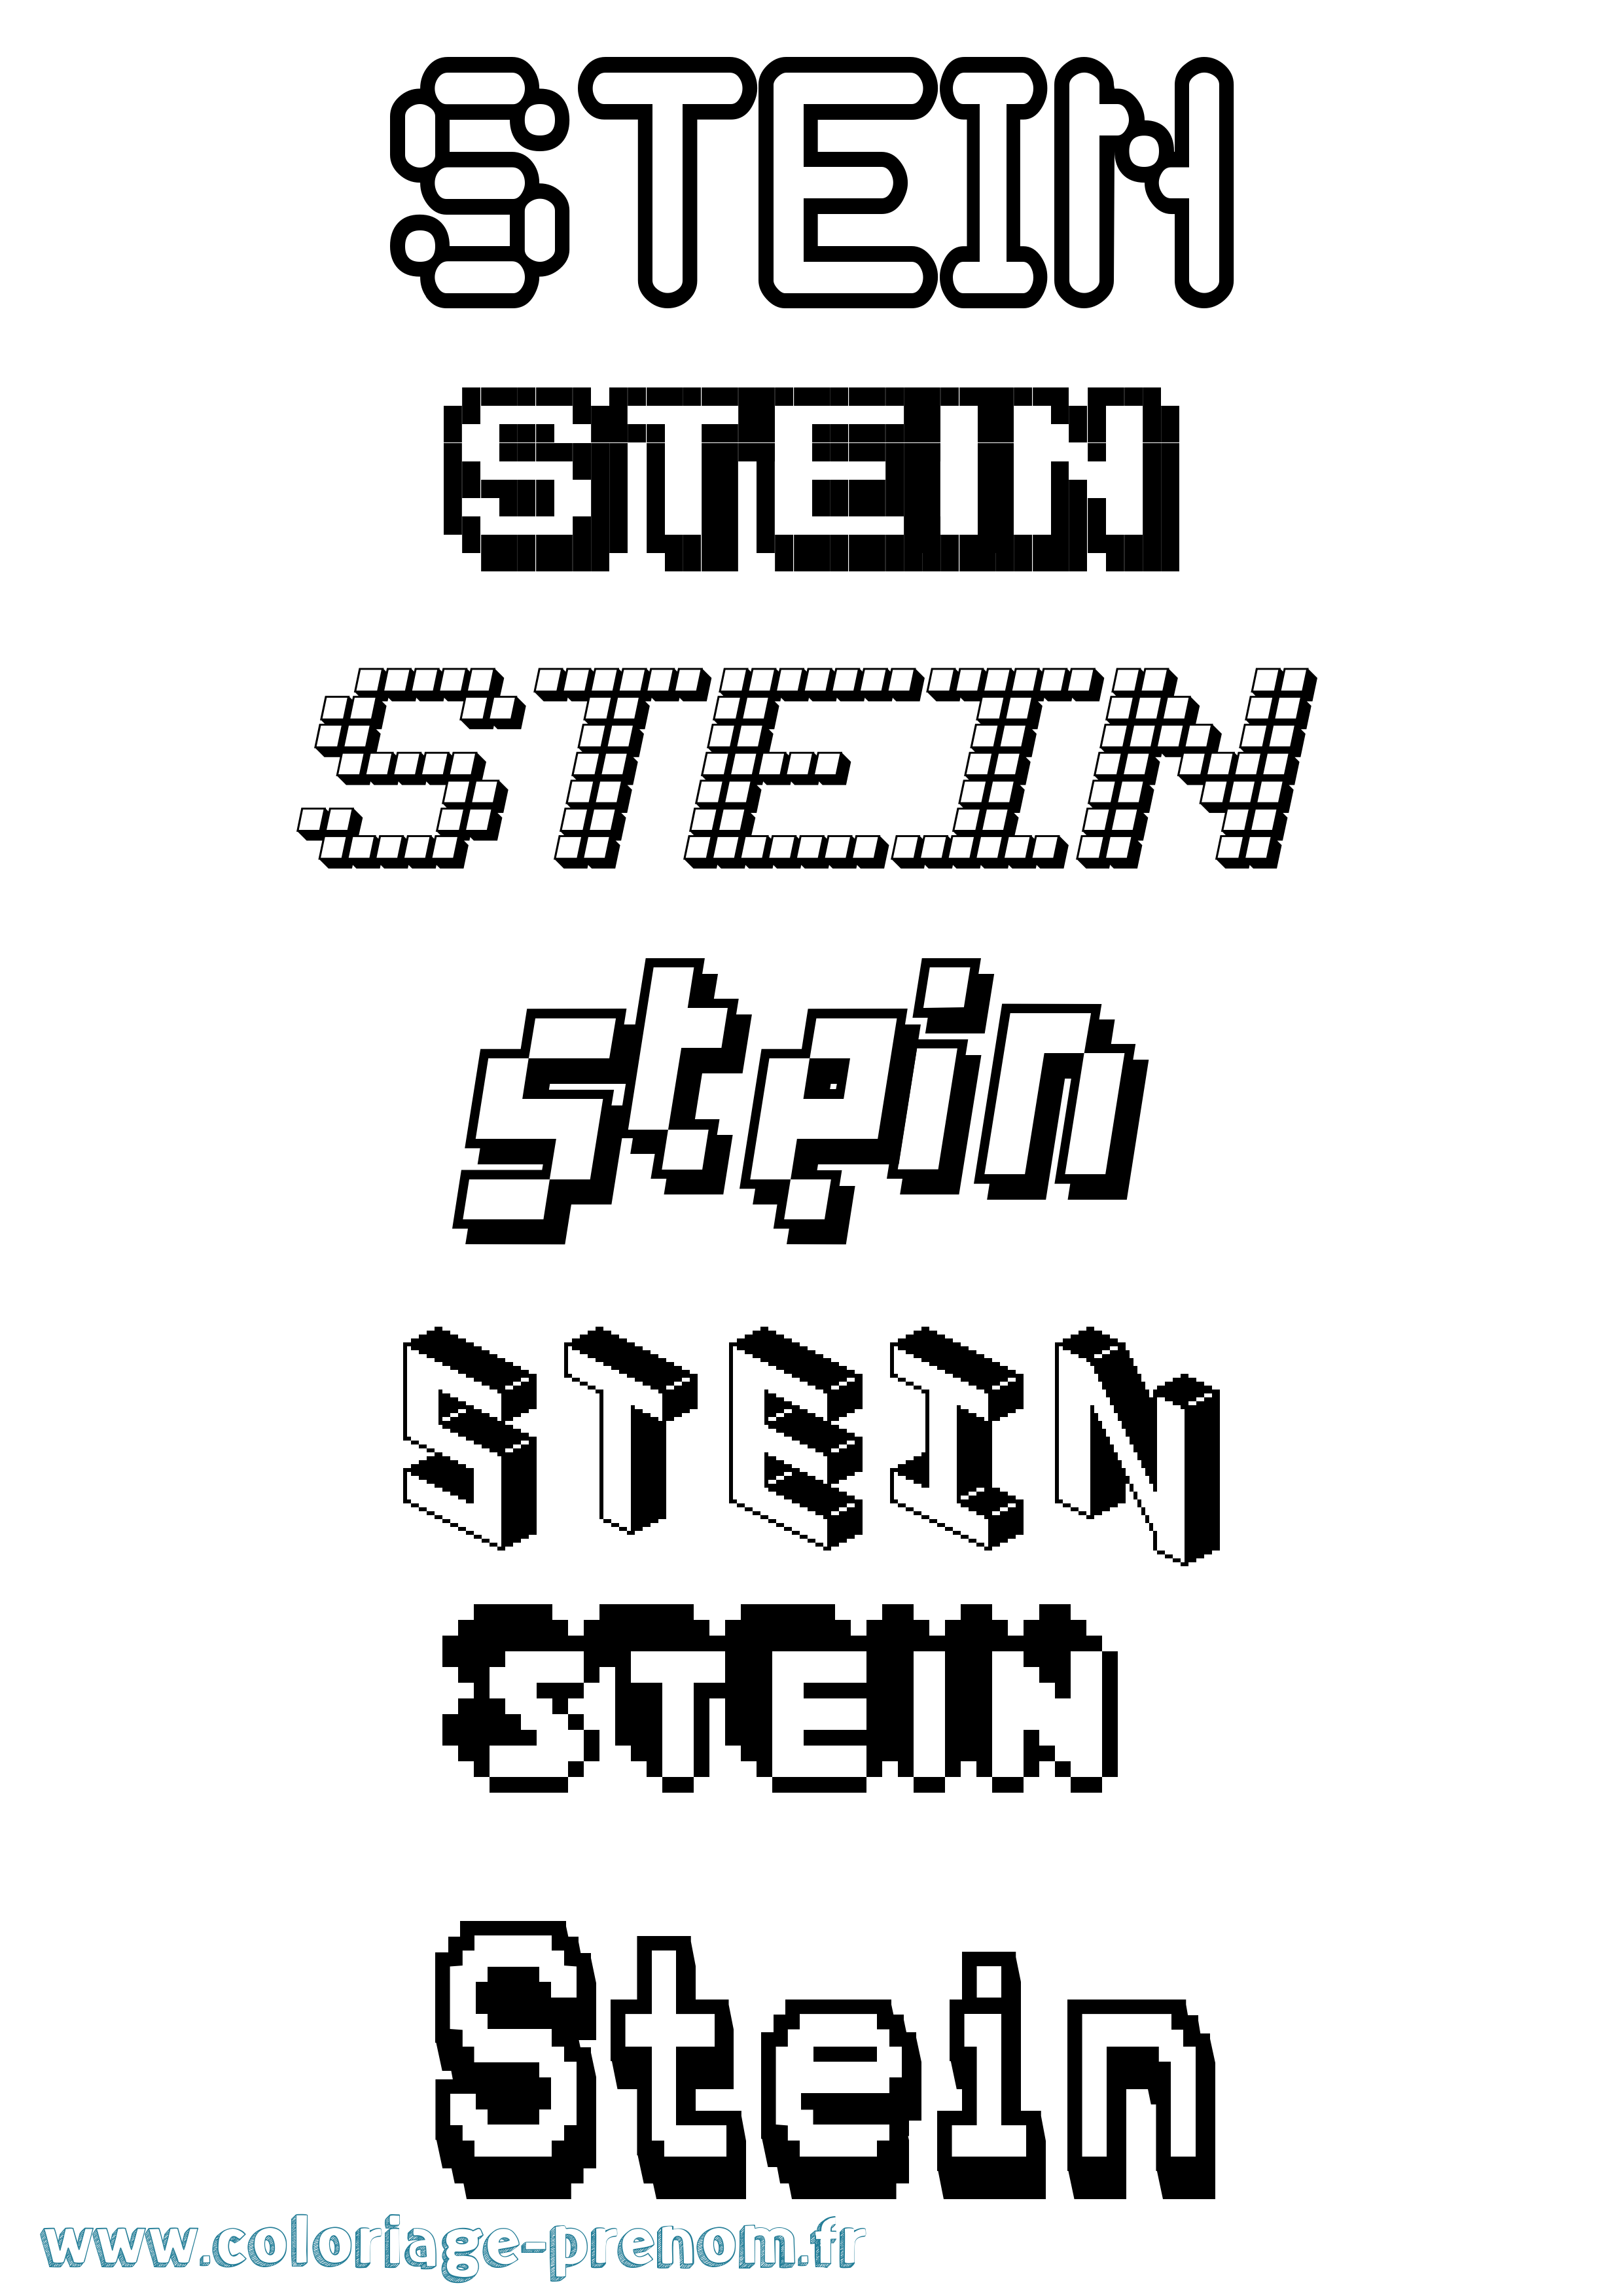 Coloriage prénom Stein Pixel